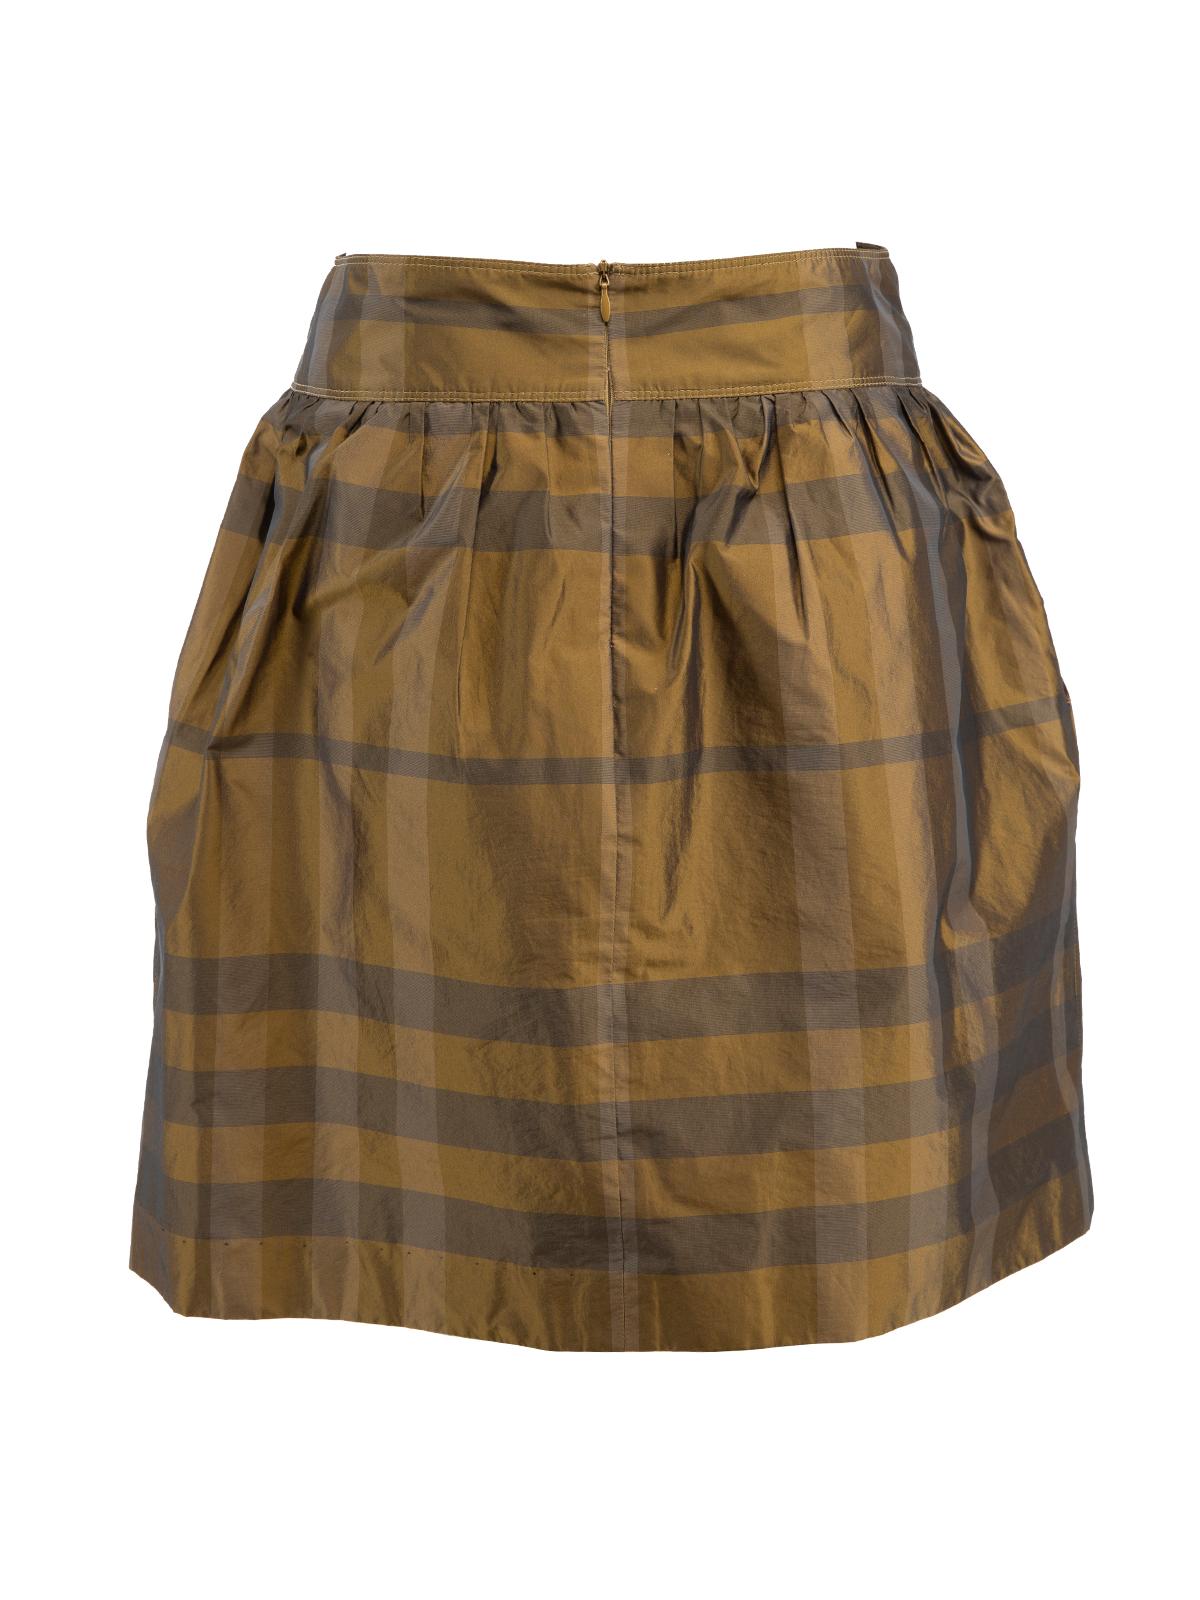 Pre-Loved Burberry Women's Monogram A Line Skirt 1